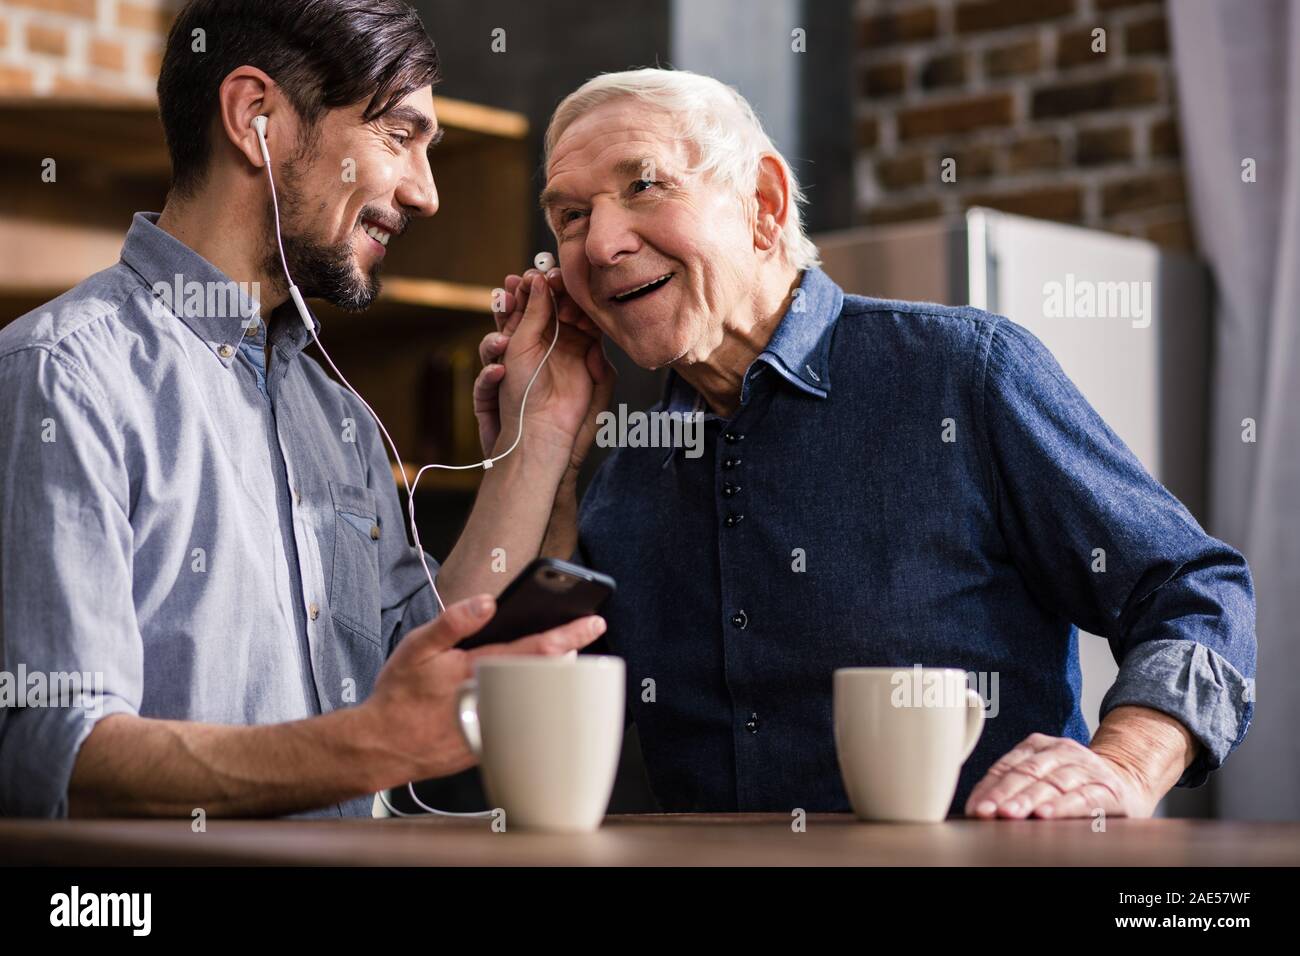 Joyful elderly man talking on smartphone Stock Photo